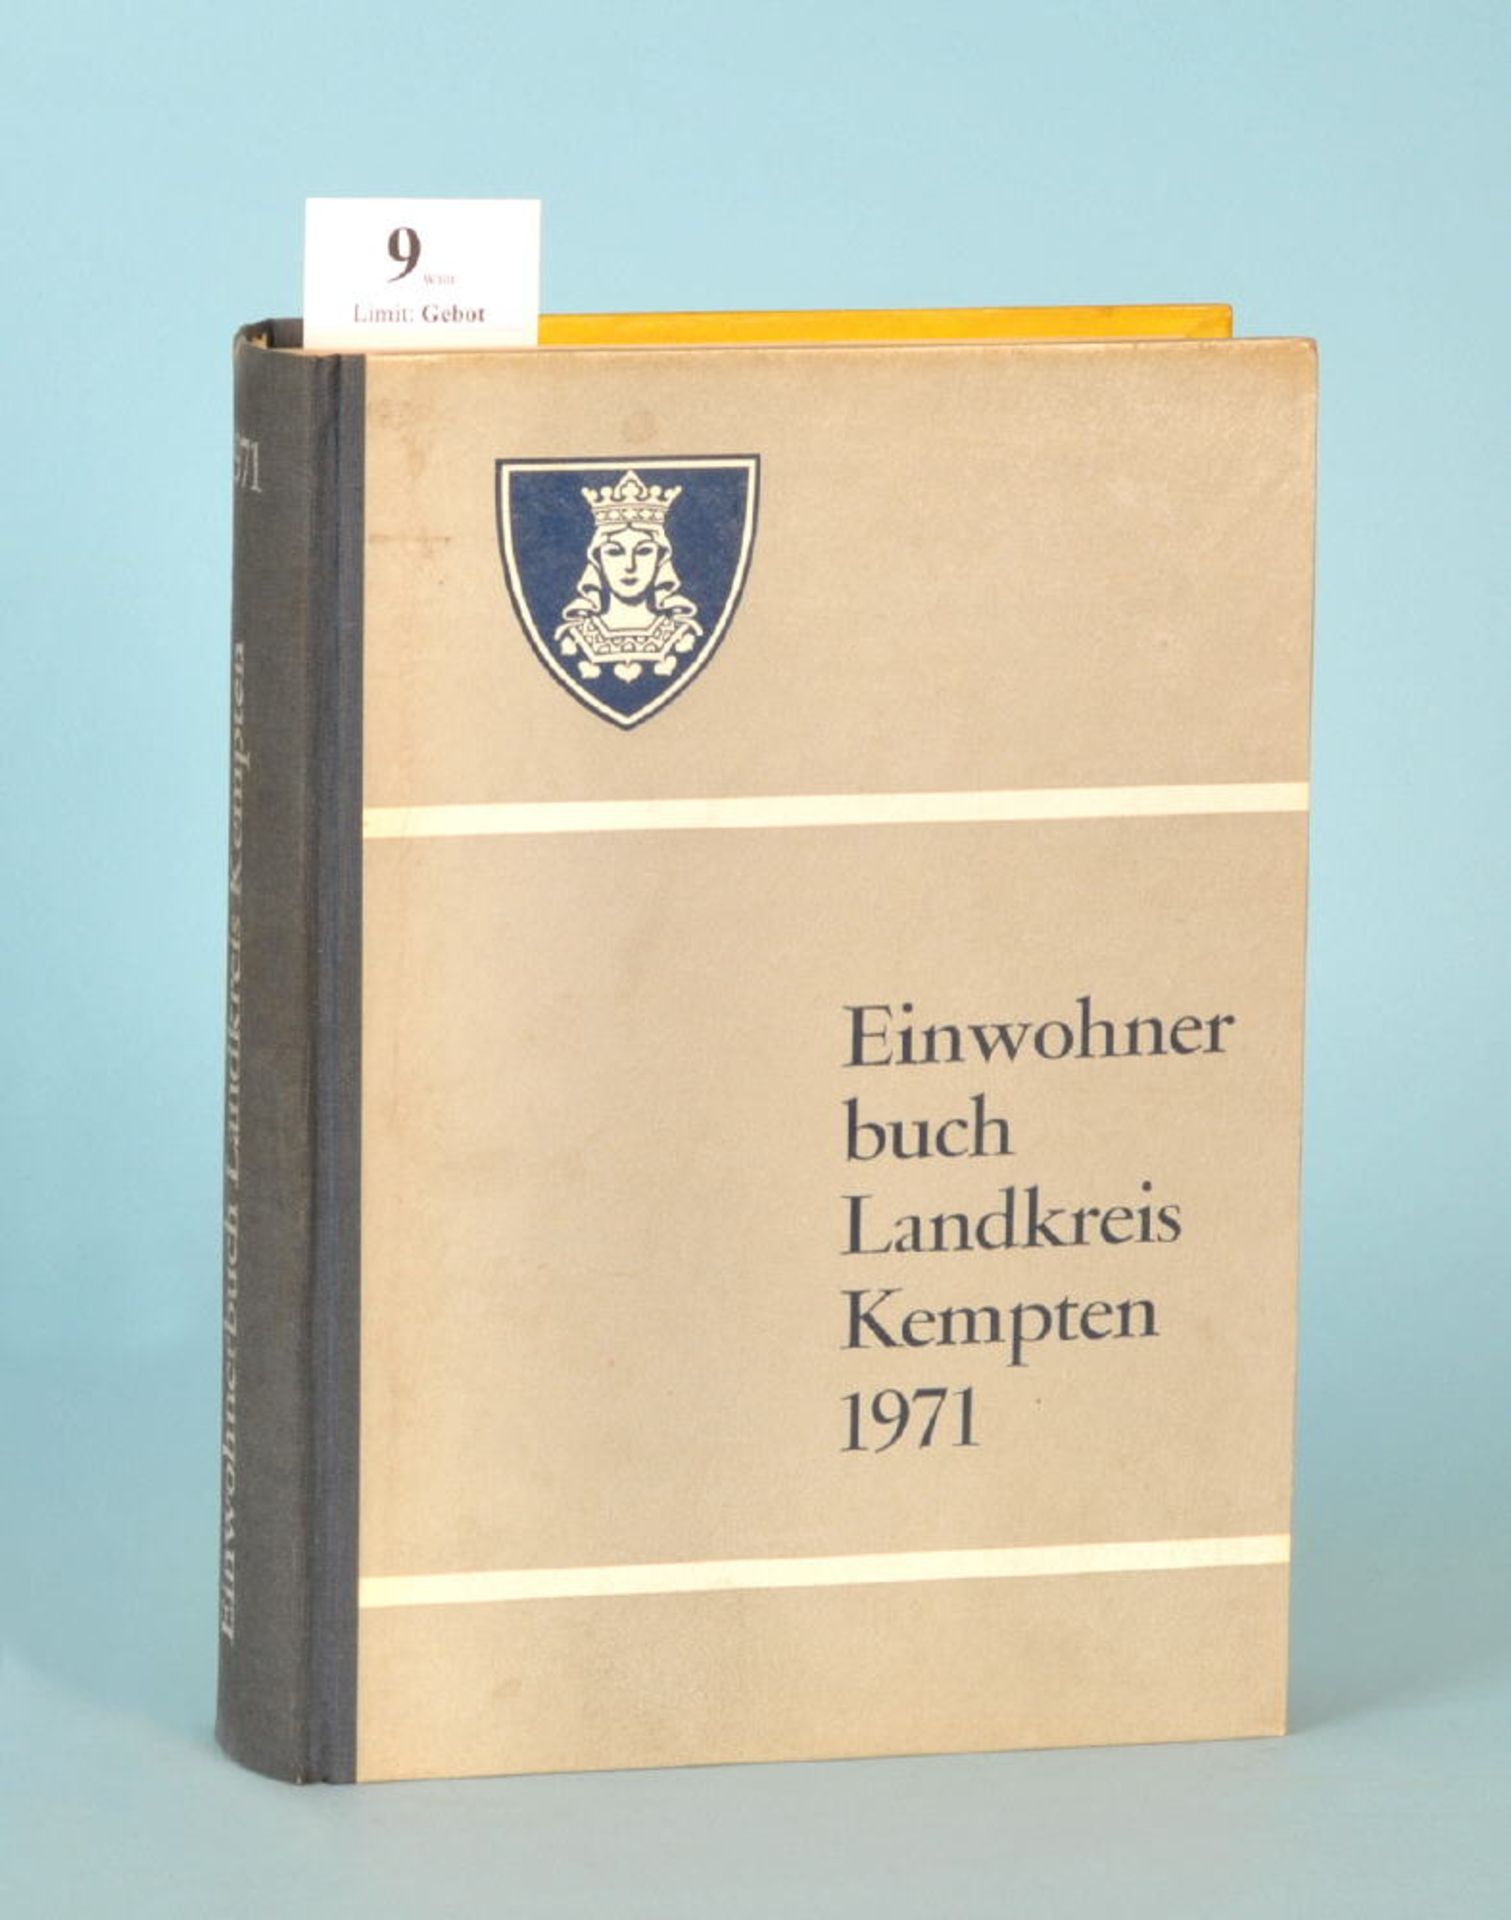 Einwohnerbuch des Landkreises Kempten/Allgäu 1971534 S., Allgäuer Zeitungsvlg., Kempten, 1971, KtE/